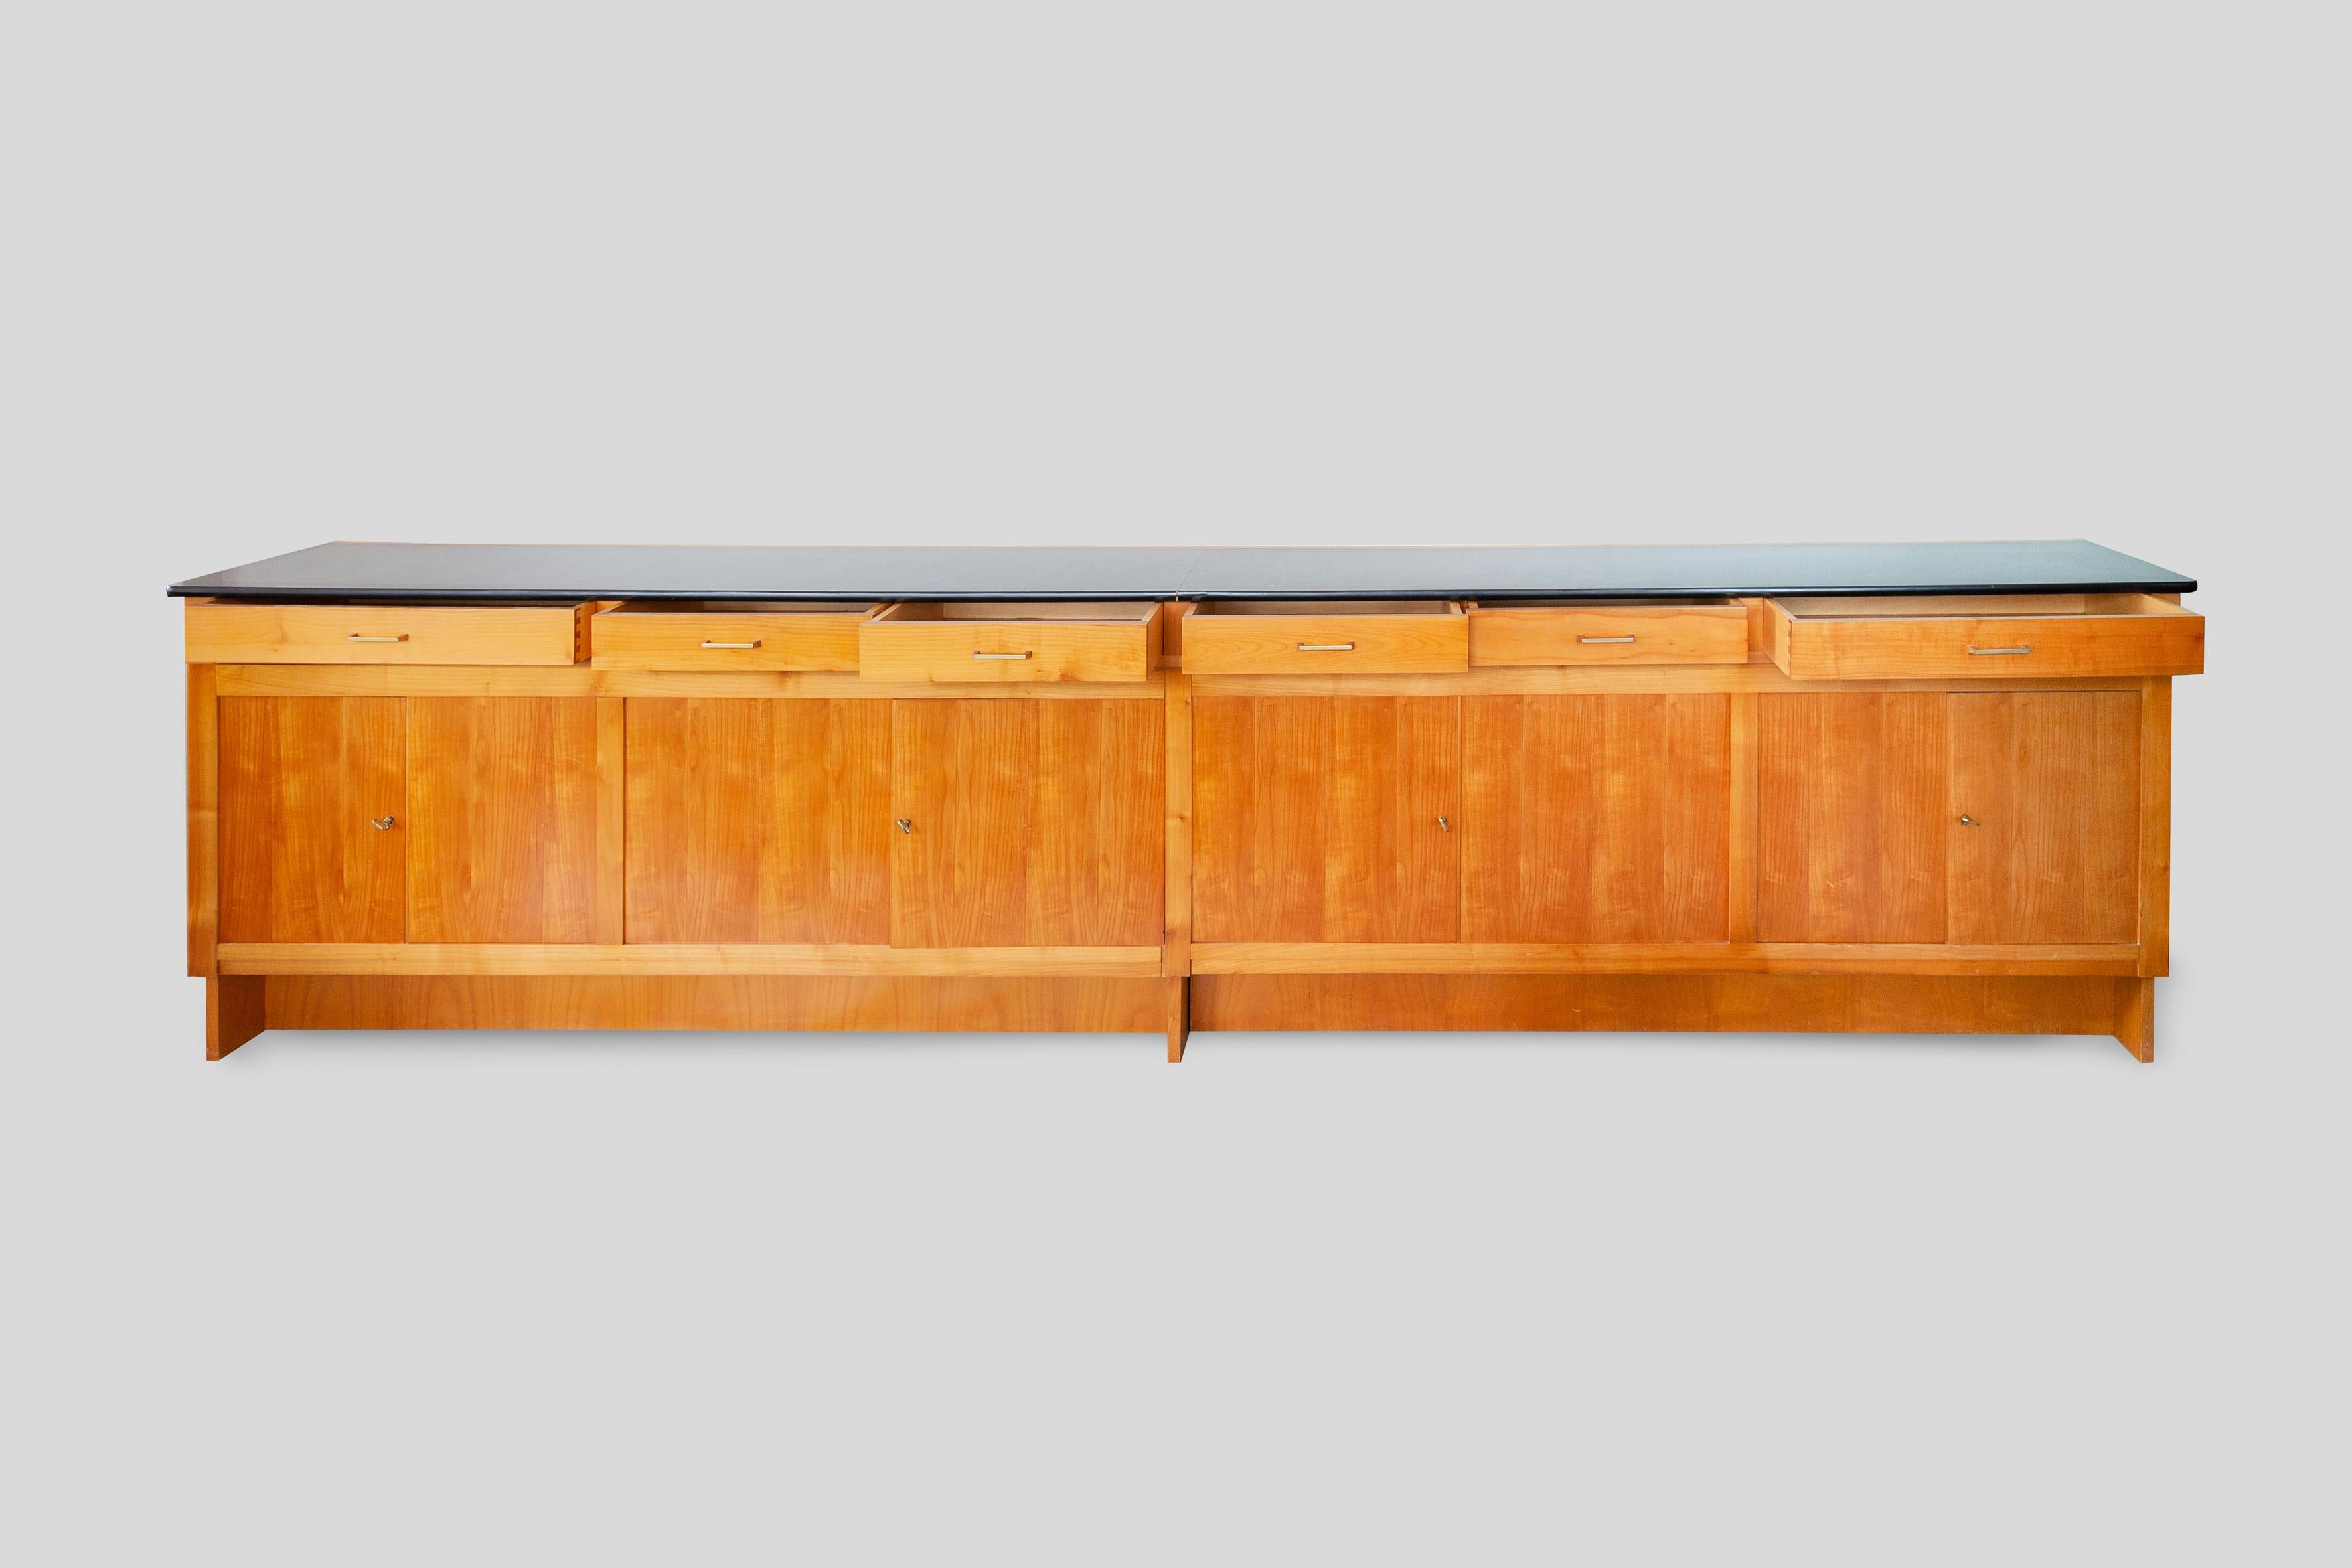 Geradliniges Sideboard aus den 1960er Jahren mit vier Flügeltüren und schwarzer Laminatplatte. Das große, schöne Sideboard wurde 1965 von einem unbekannten Künstler für eine moderne Wohnung entworfen. Die Front aus Eschenholz besteht aus vier